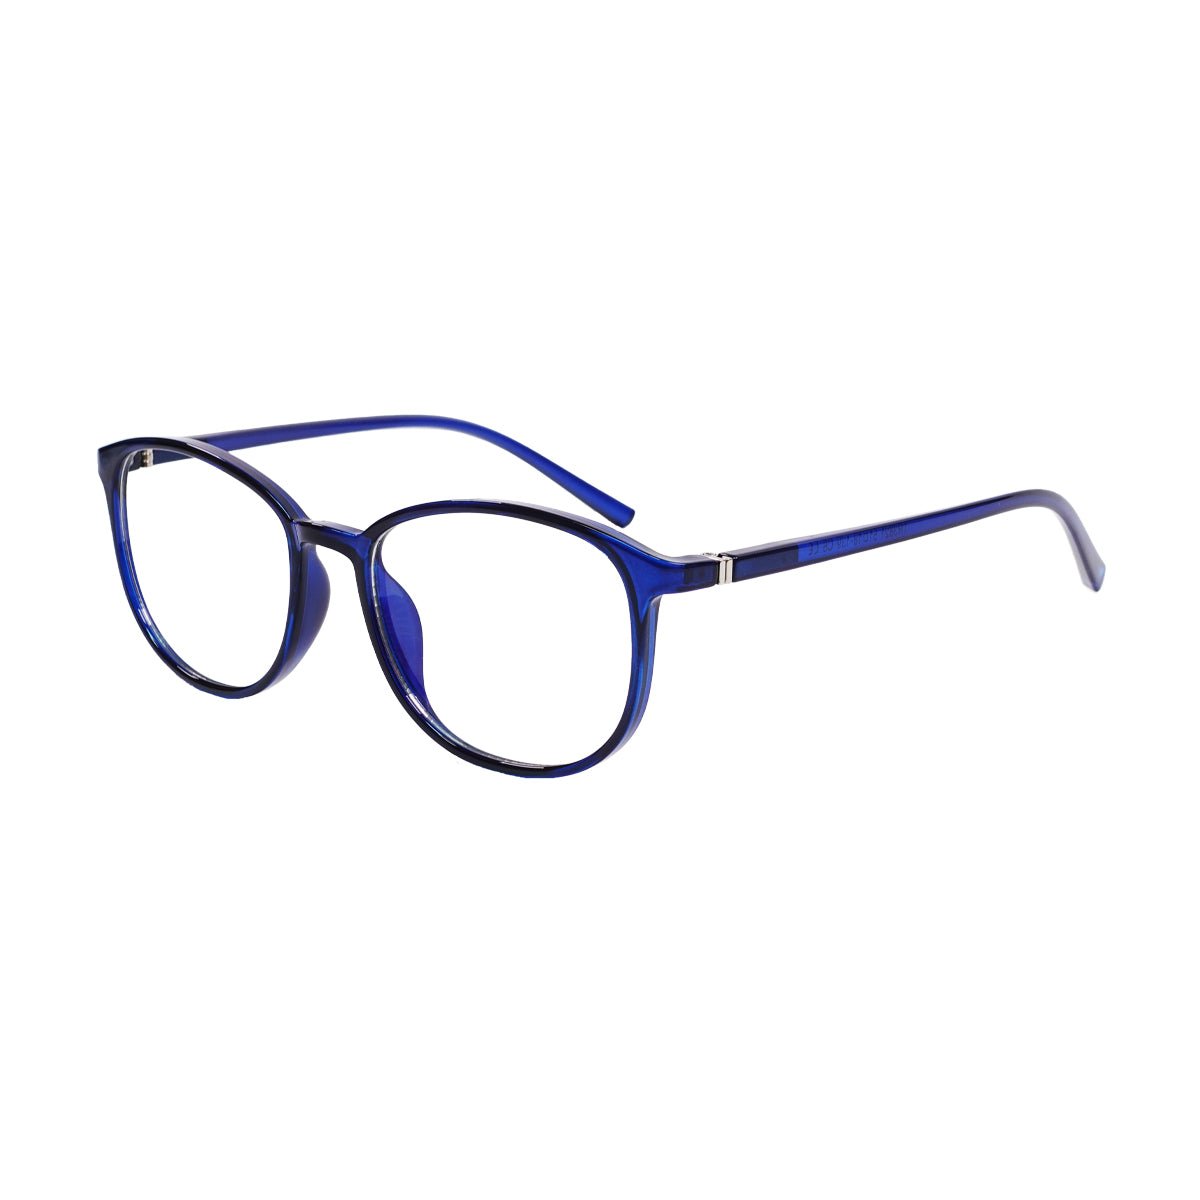 Epic Gamers Glasses V2 - Blue - Store 974 | ستور ٩٧٤